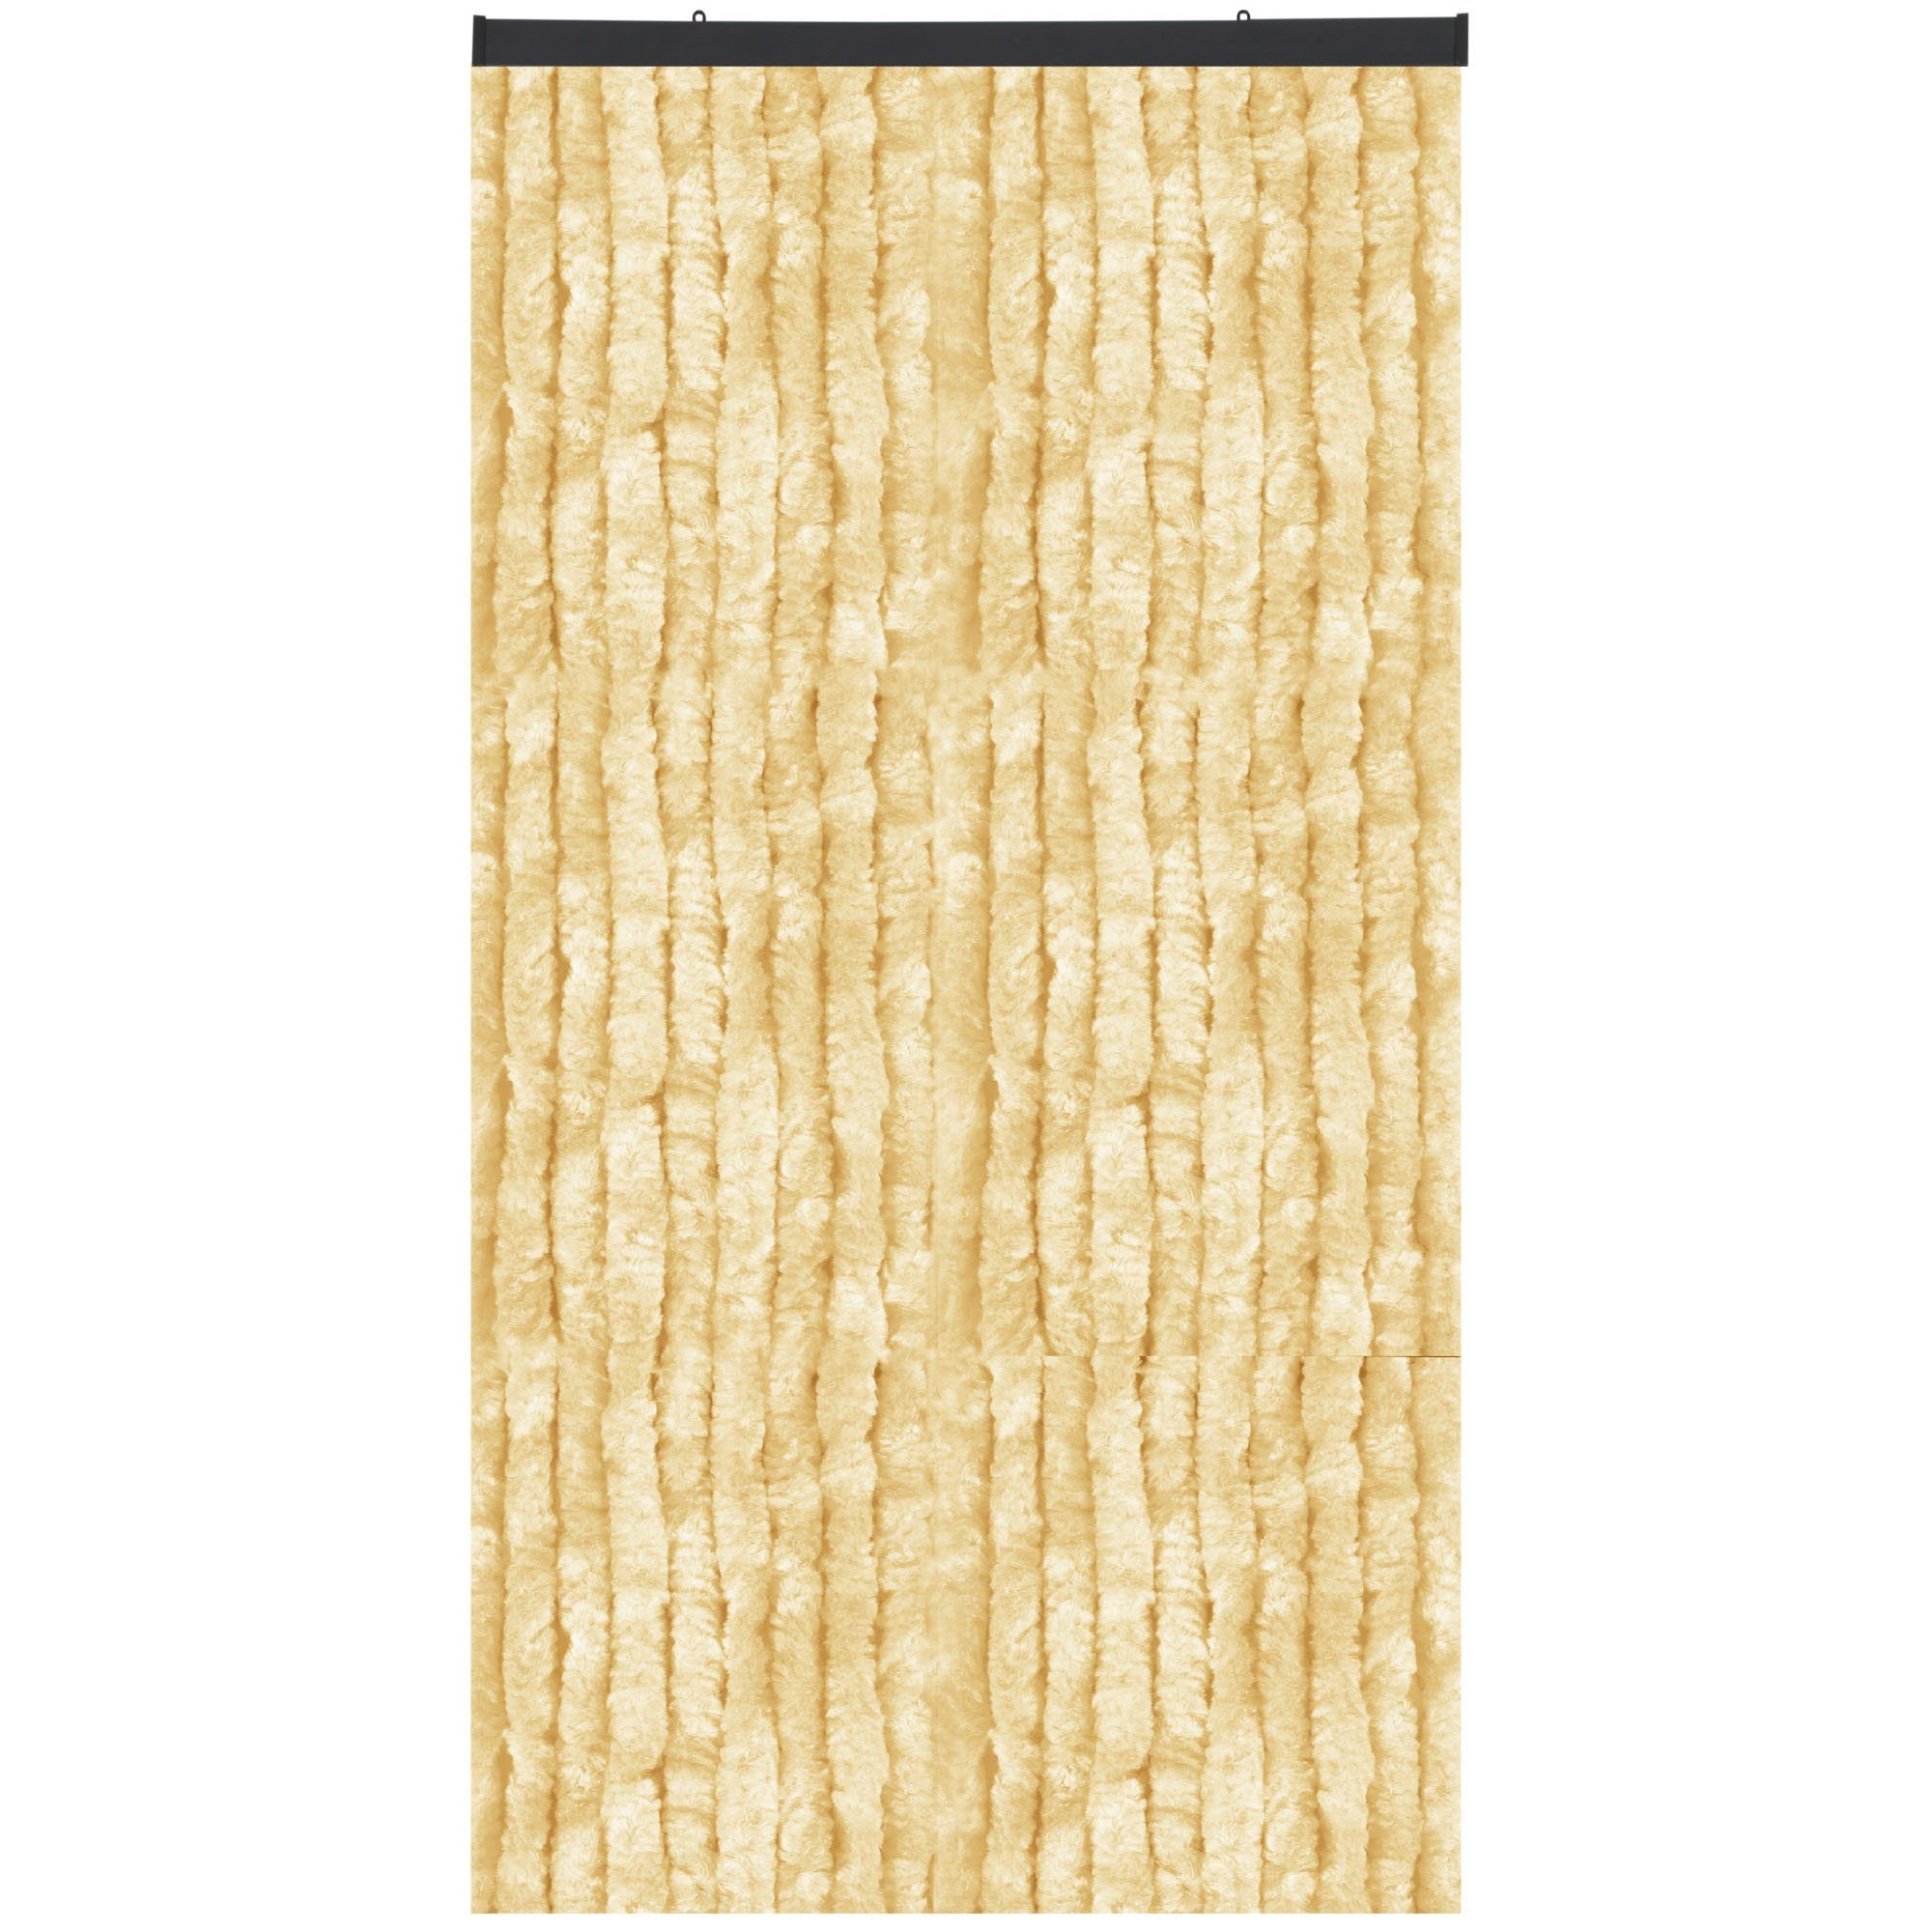 Türvorhang Flauschi, Arsvita, Ösen (1 St), Flauschvorhang 160x185 cm in Unistreifen beige, viele Farben